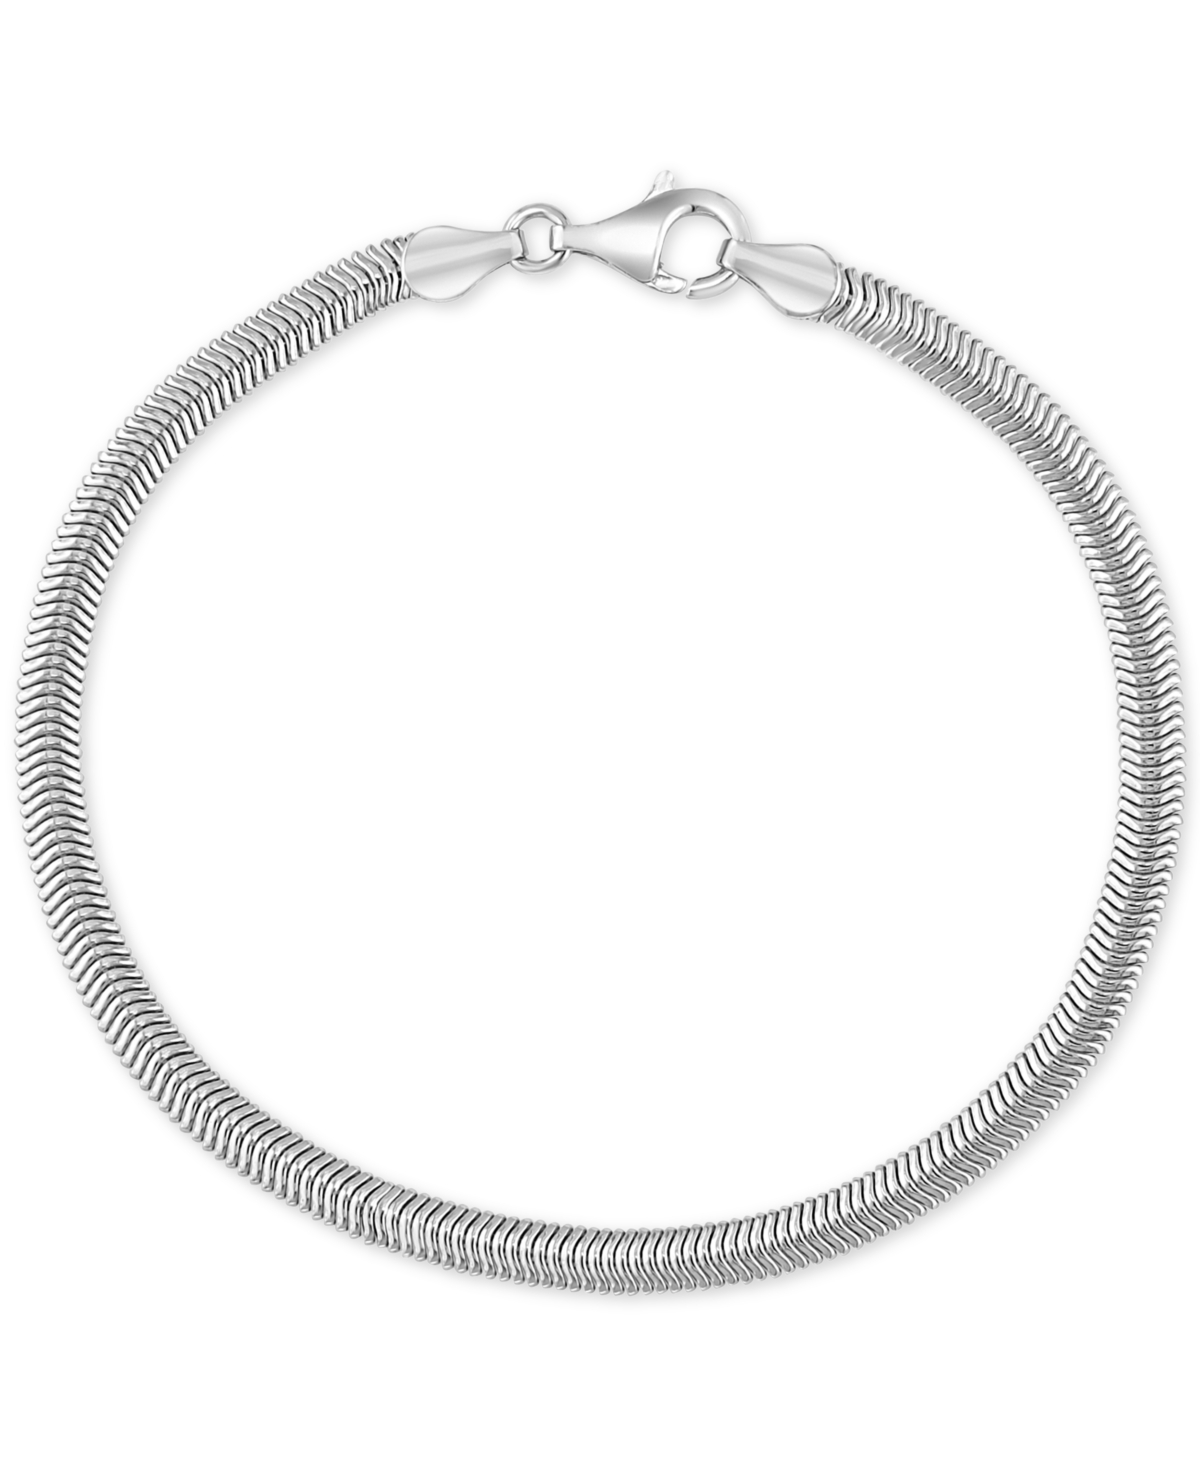 Effy Men's Link Bracelet in Sterling Silver - Silver